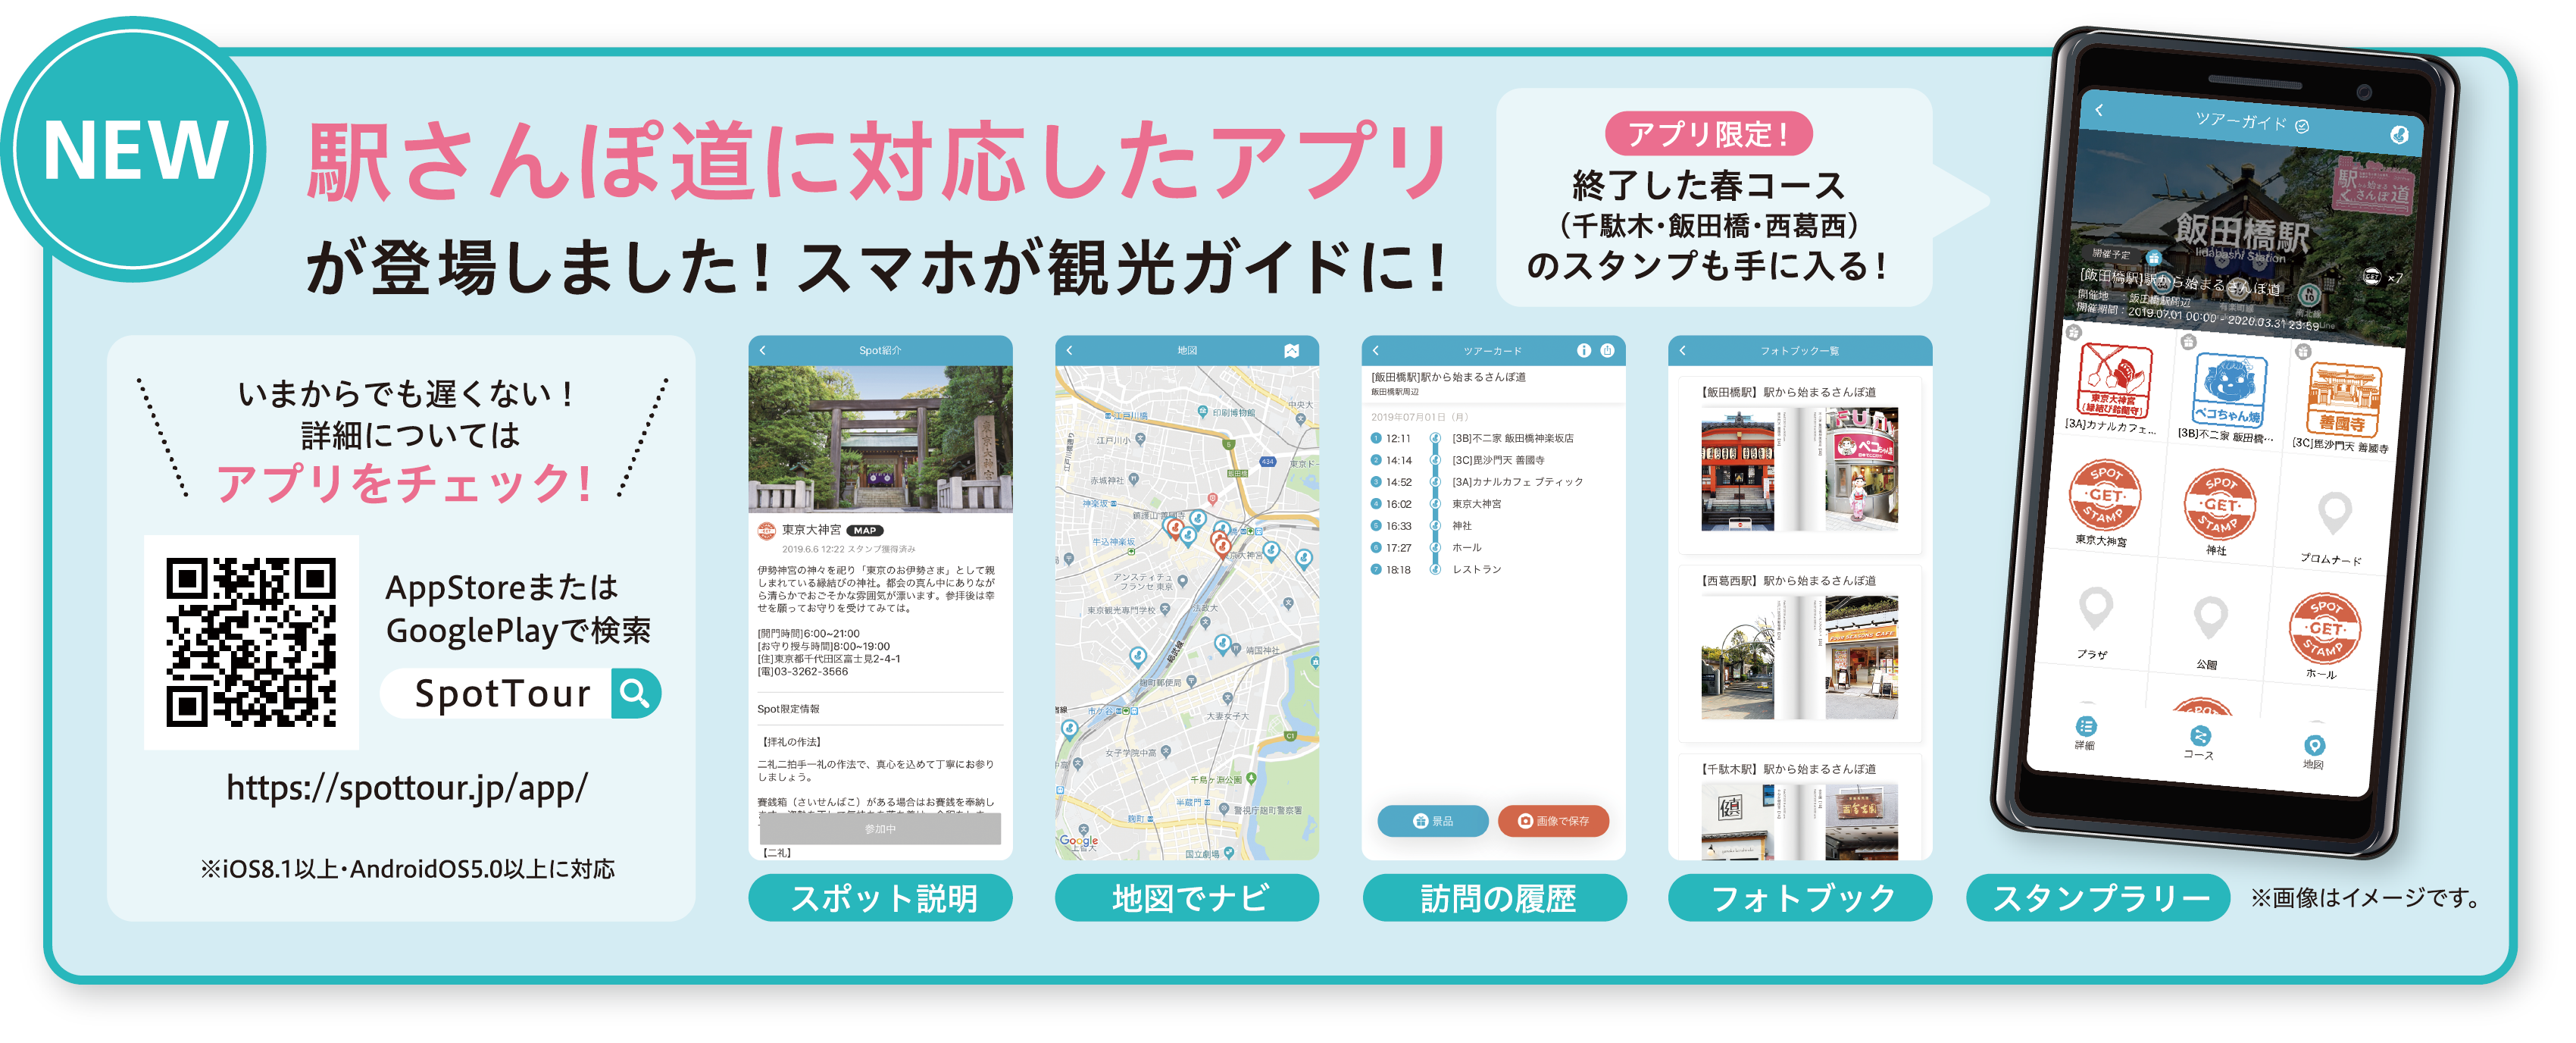 デジタル観光ツアーアプリ Spottour の実証実験開始 東京メトロのプレスリリース